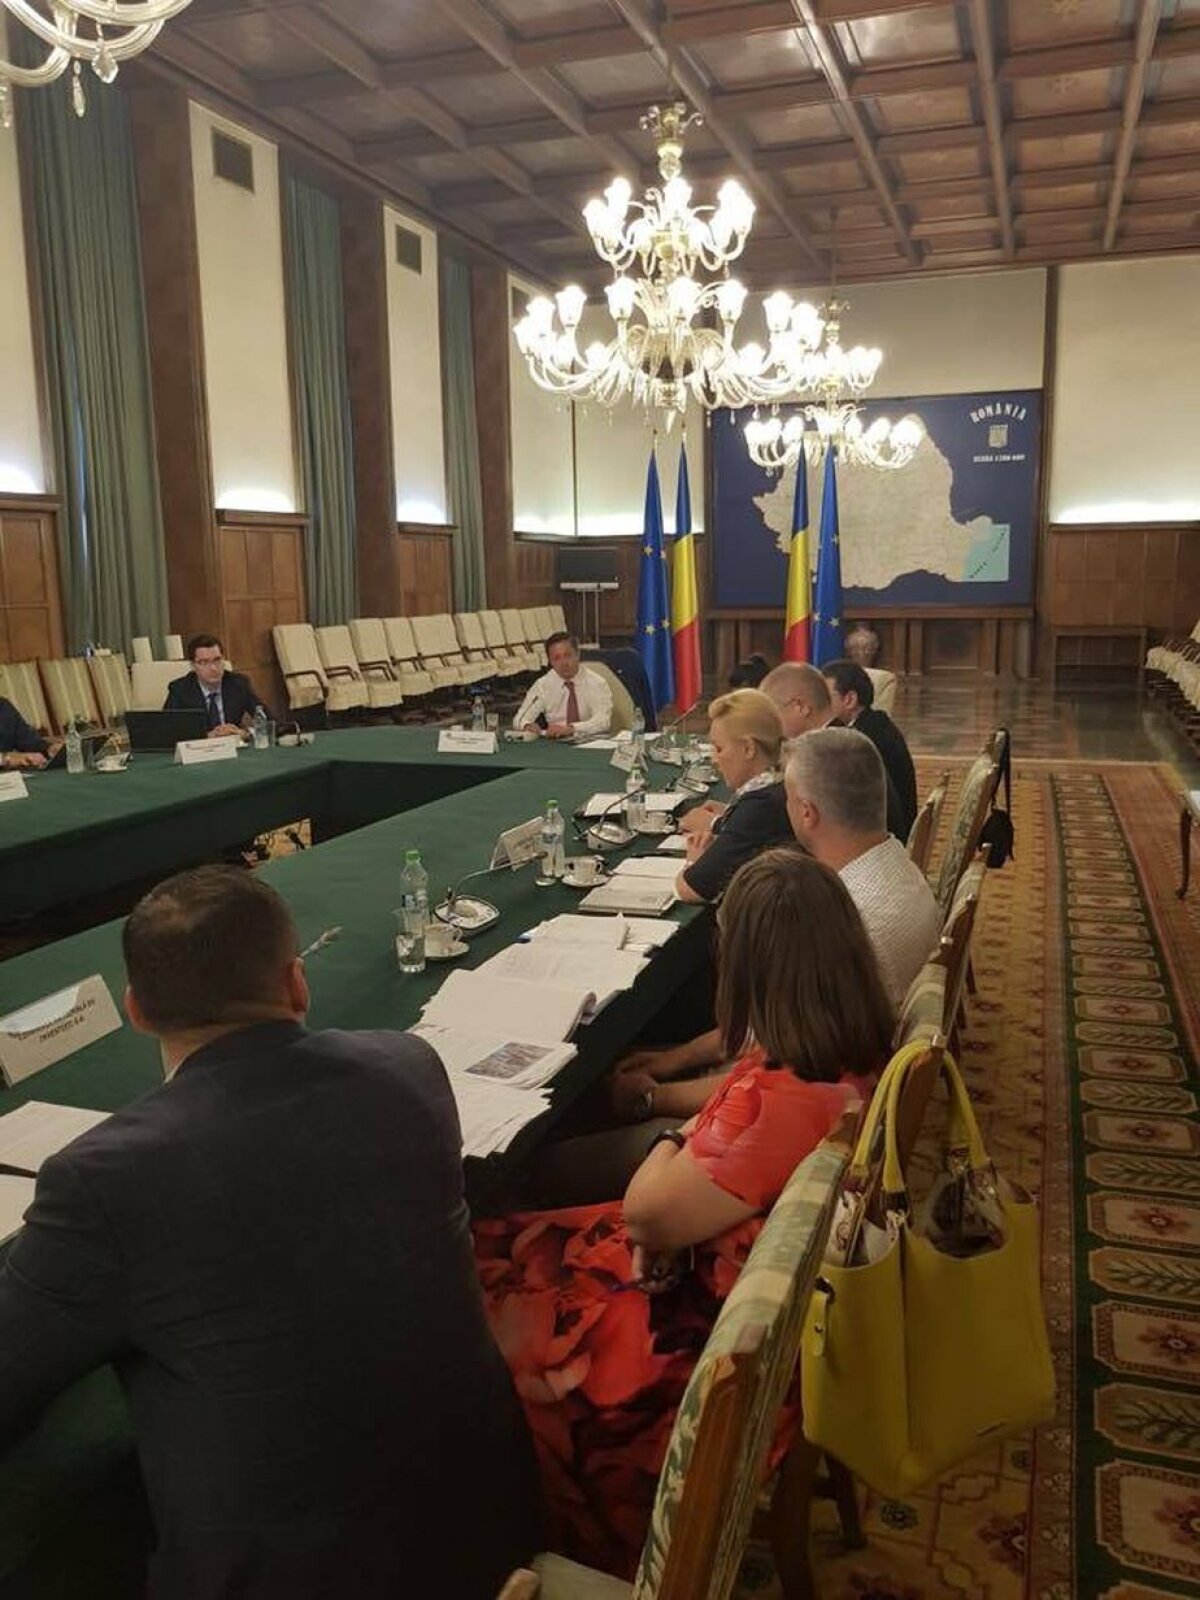 MTS, întâlnire importantă pentru organizarea CE 2020 în România: "În joc e imaginea țării" 